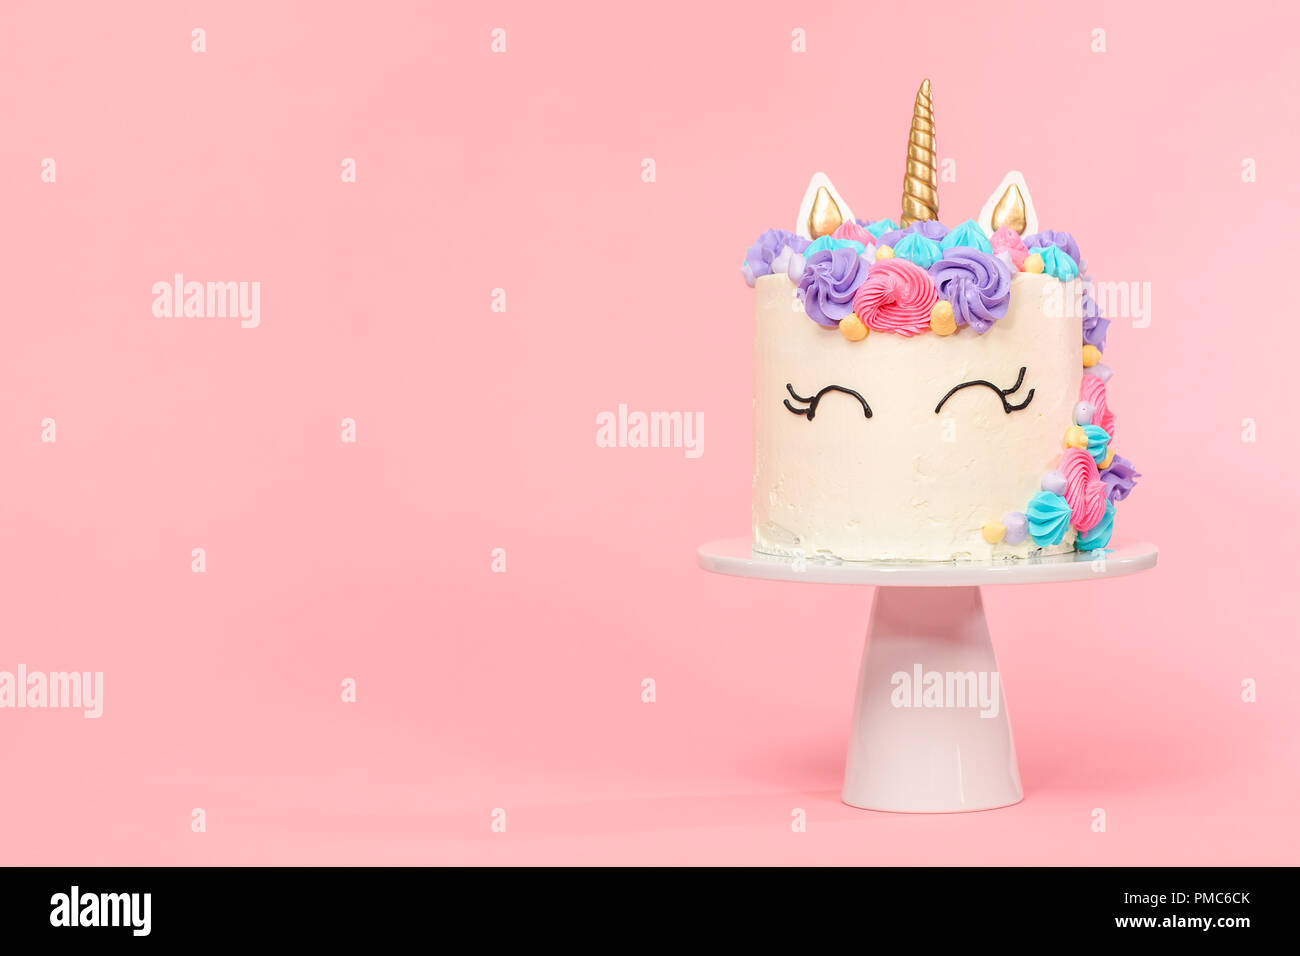 Pin by 𝓕𝓪𝔂𝓮𝔃𝓪𝔂 on Birthday Vibes | Kitchen appliances, Happy  birthday, Birthday